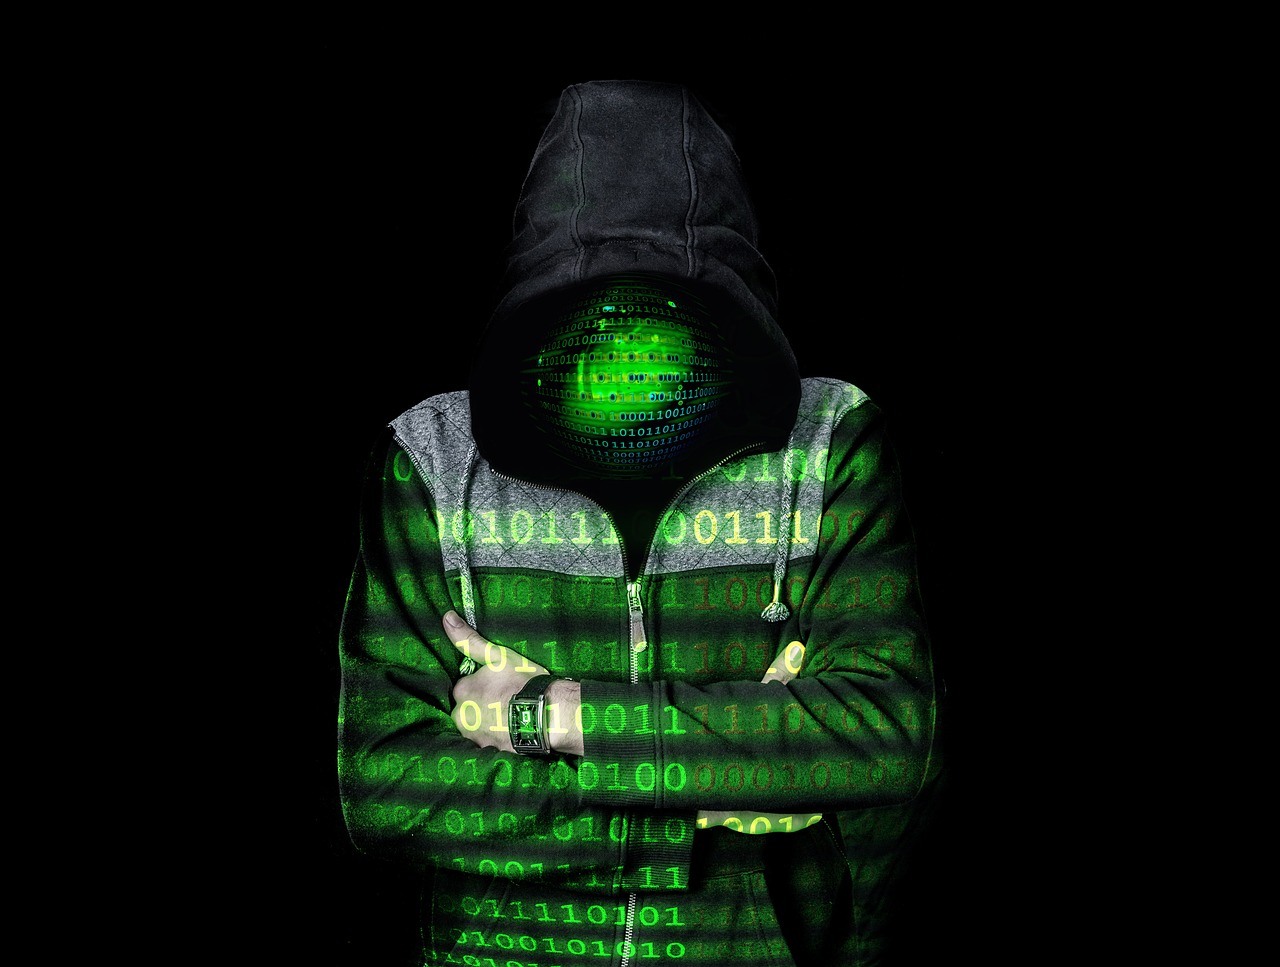 Ein Mann im Kapuzenpulli vor schwarzem Hintergrund, auf ihm in grün Nullen und Einsen projiziert. Sein Gesicht nicht zu erkennen, ersetzt durch grüne Nullen und Einsen.